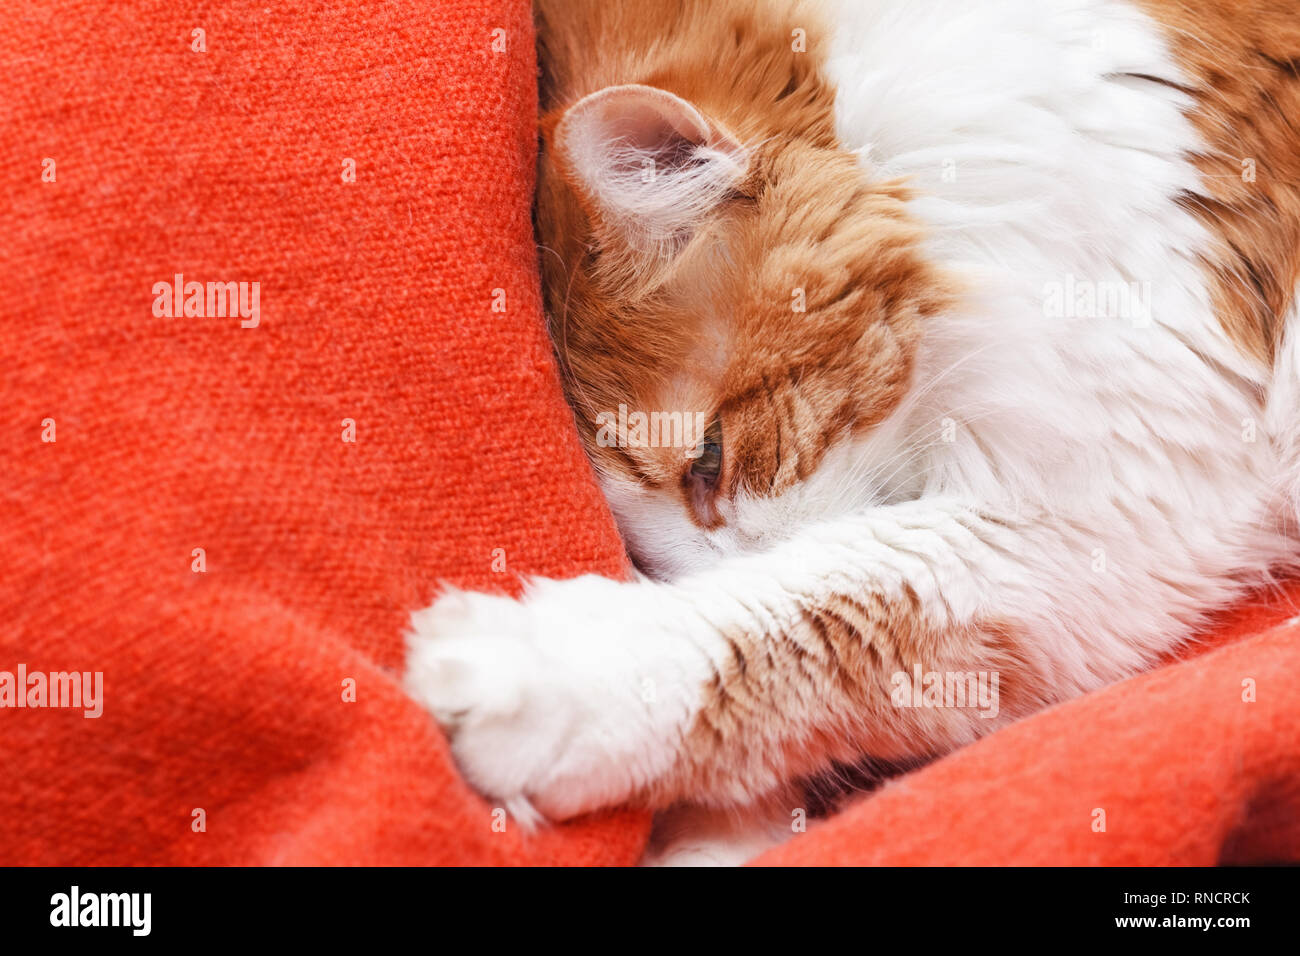 Joli chat rouge adultes enterrés dans une couverture orange Banque D'Images